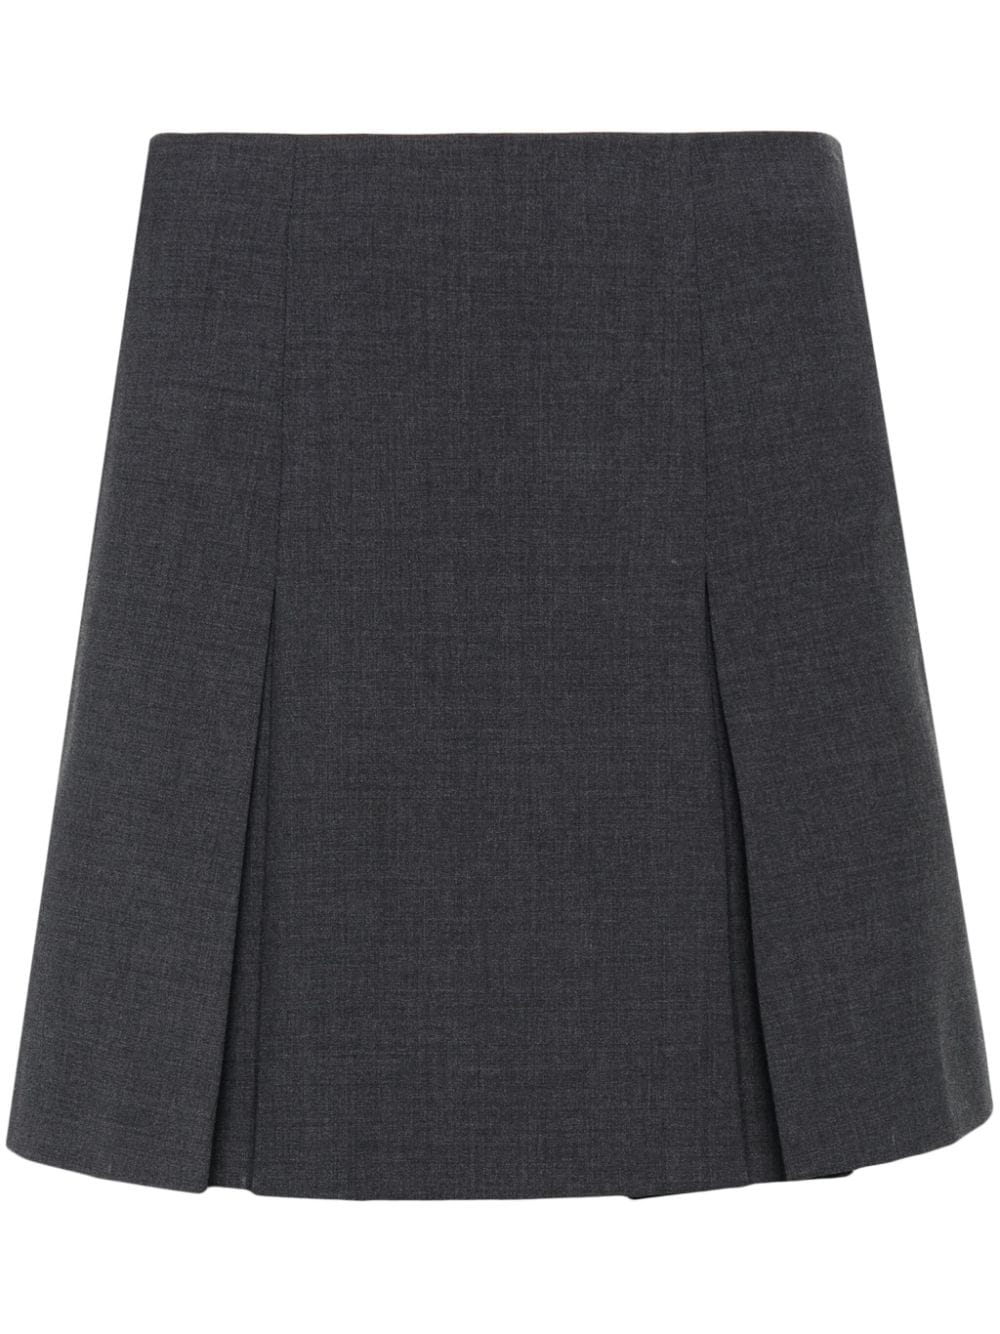 Claudie Pierlot pleat detailing skirt - Grey von Claudie Pierlot